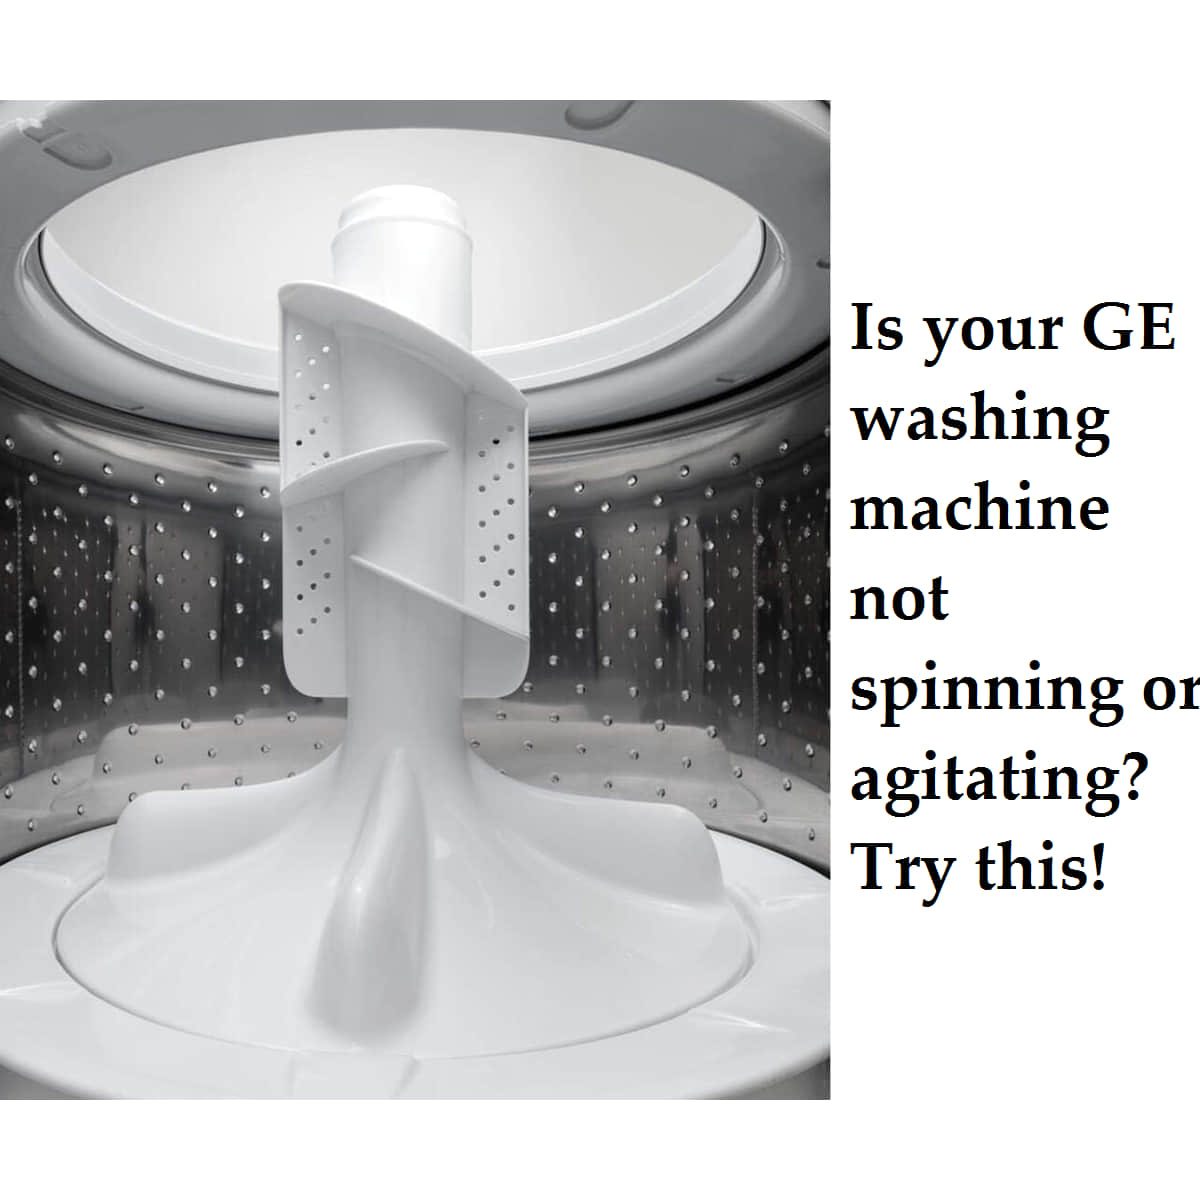 GE washing machine not spinning or agitating